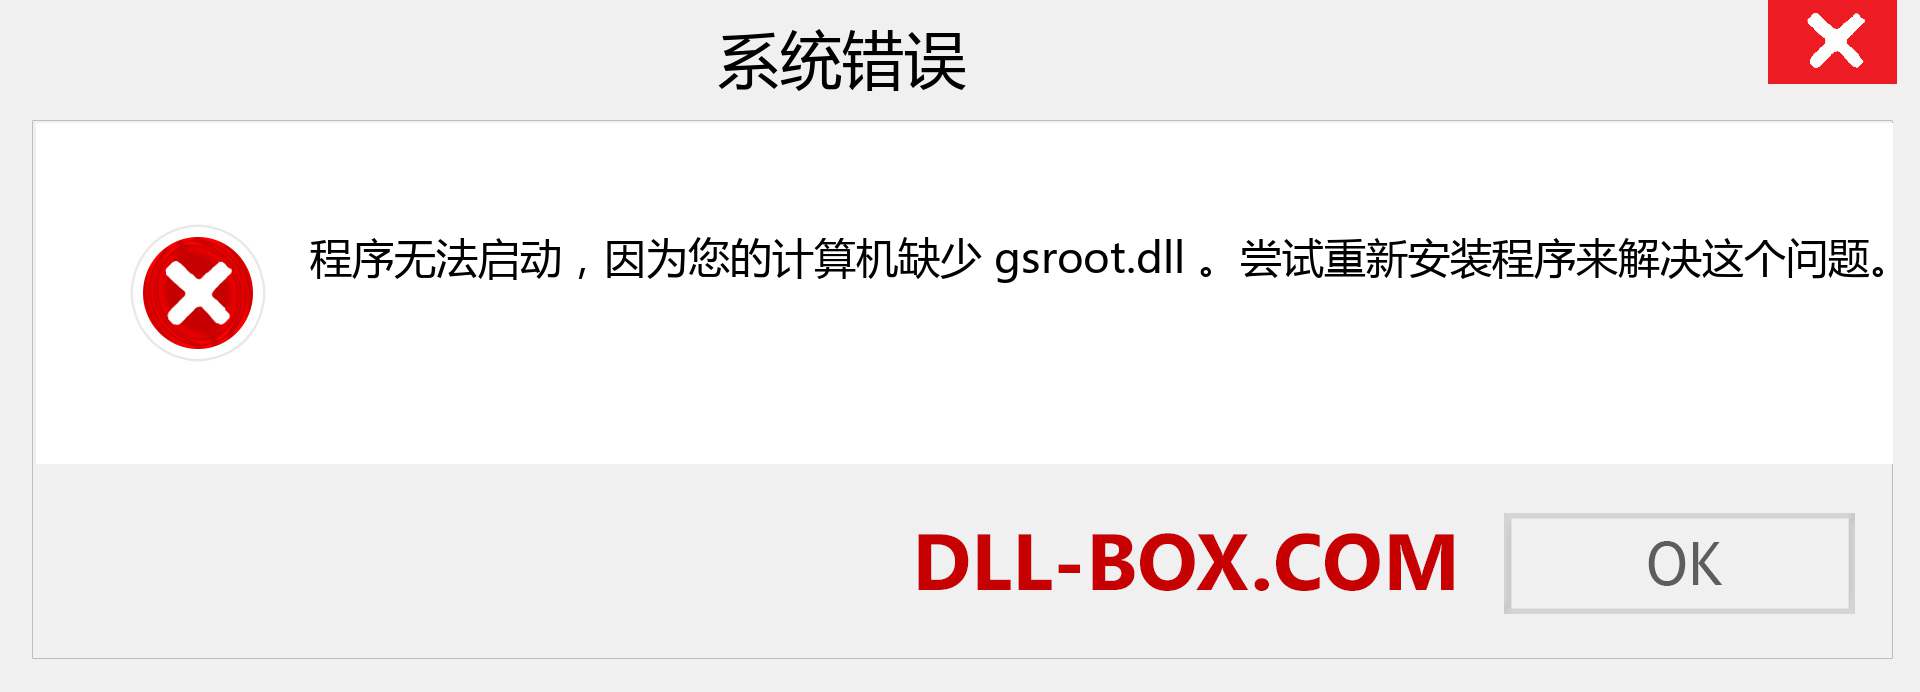 gsroot.dll 文件丢失？。 适用于 Windows 7、8、10 的下载 - 修复 Windows、照片、图像上的 gsroot dll 丢失错误